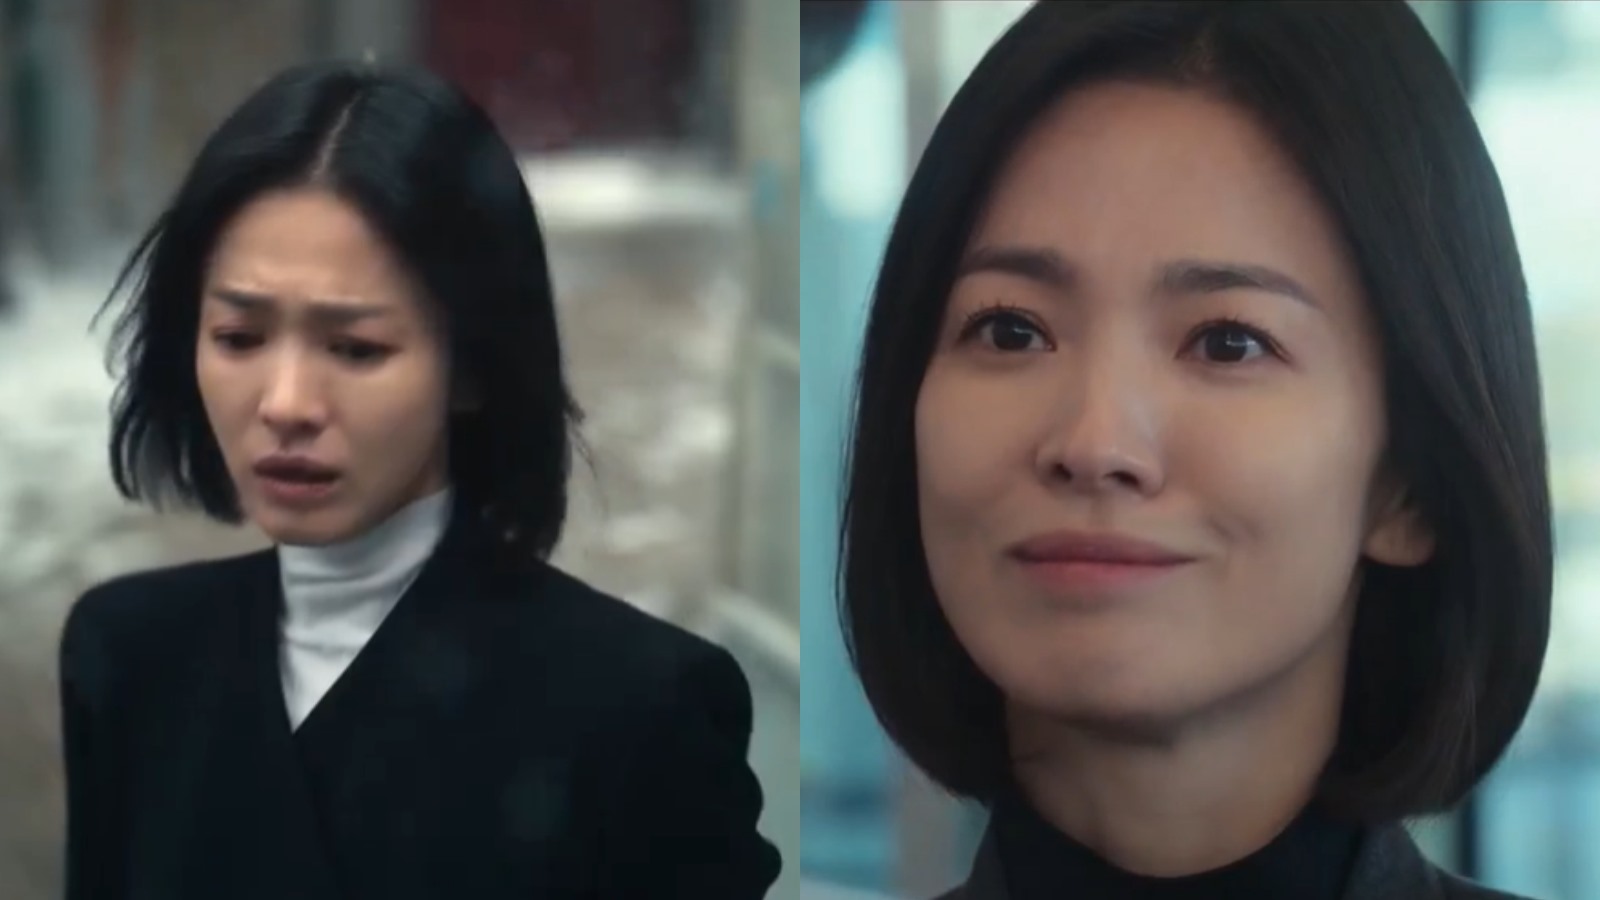 Song Hye Kyo trải qua nhiều cung bậc cảm xúc trong hành trình bắt những kẻ tàn nhẫn phải trả giá. Ảnh: Netflix